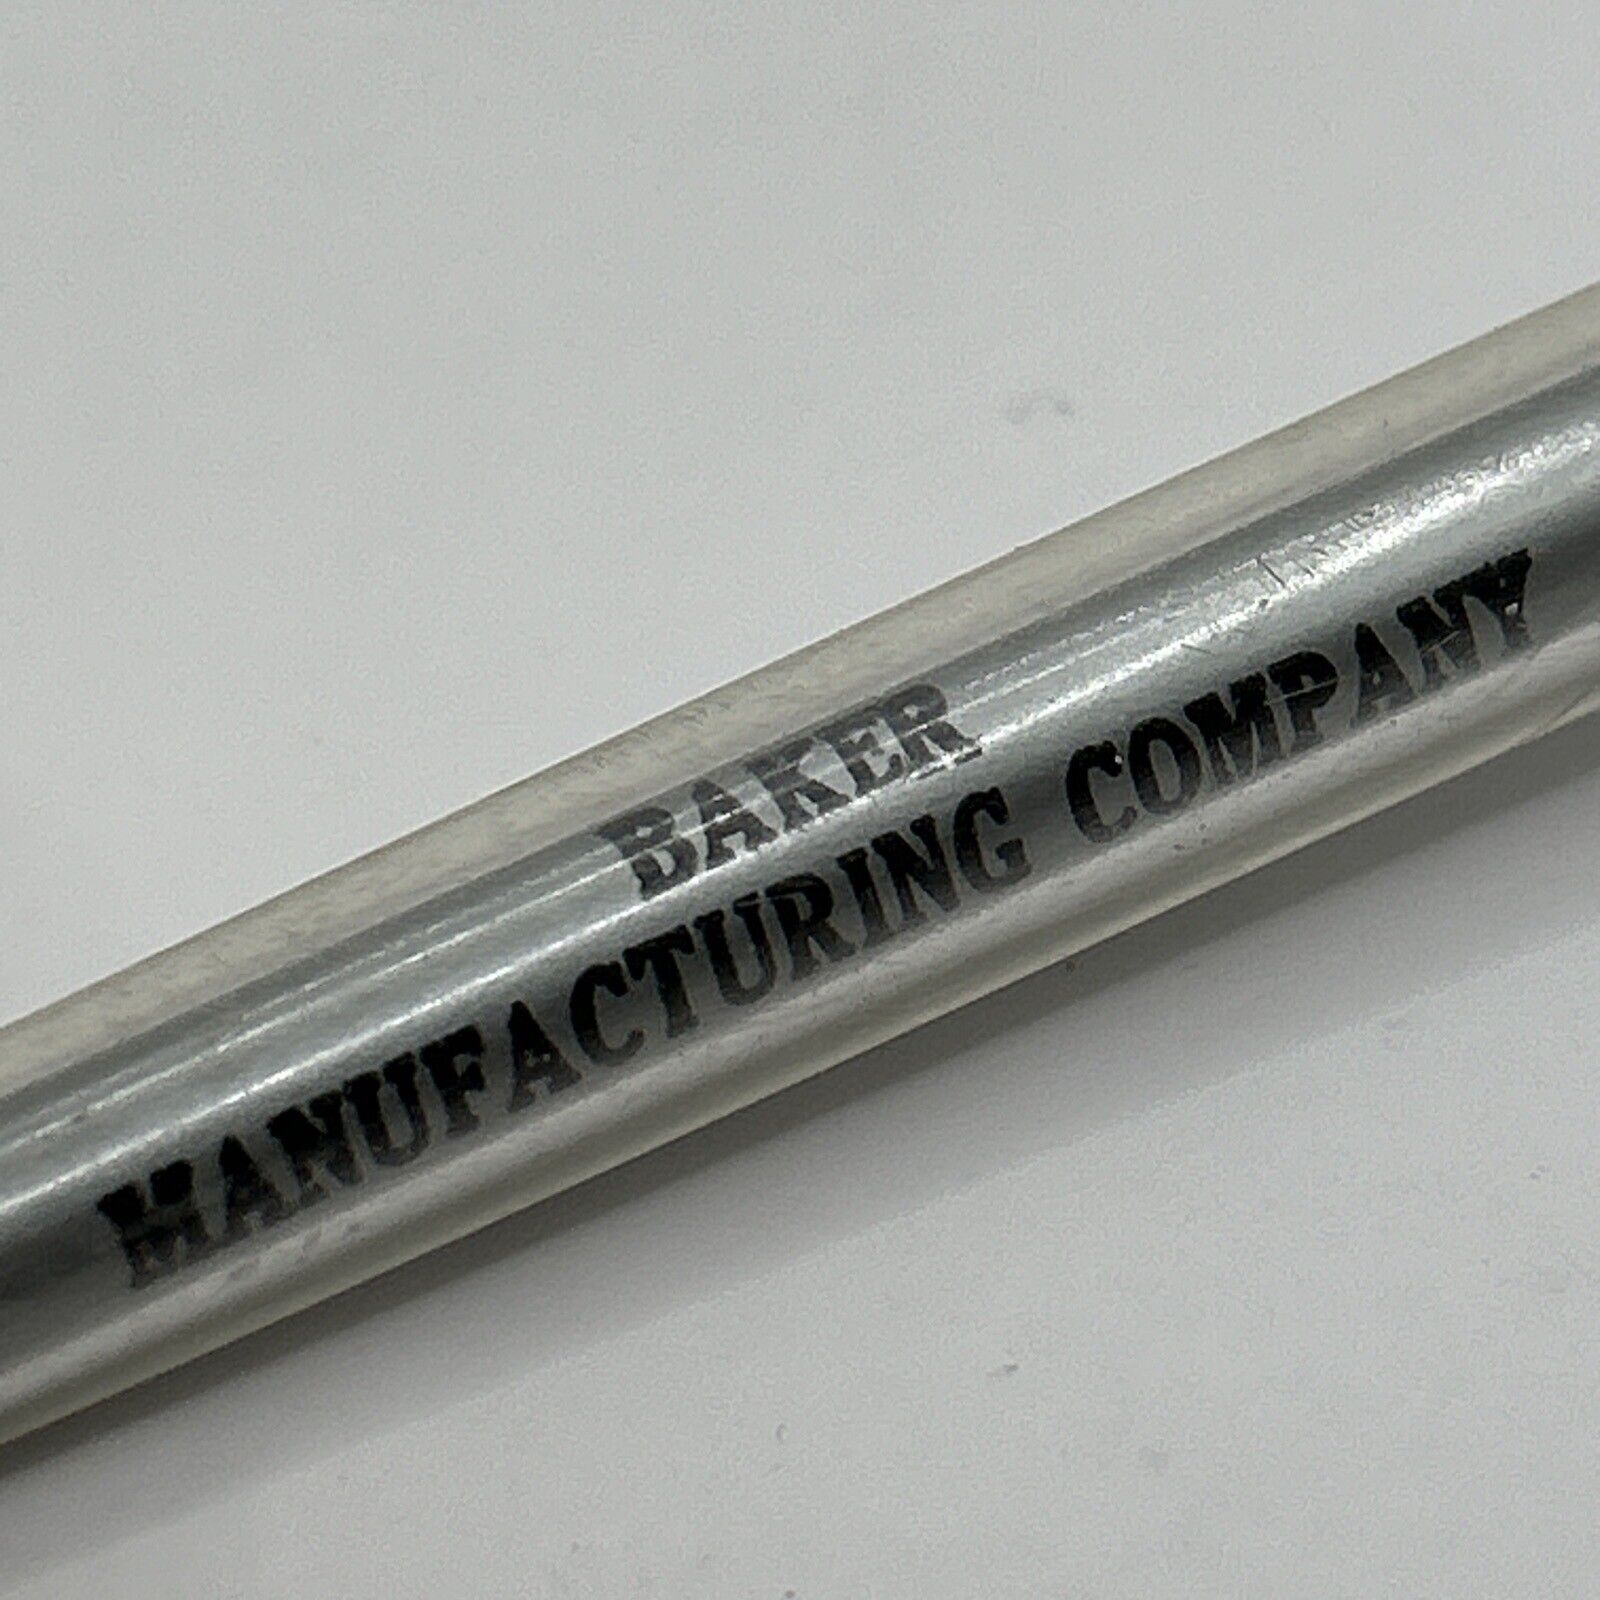 VTG Ballpoint Pen Baker Manufacturing Company Omaha NE